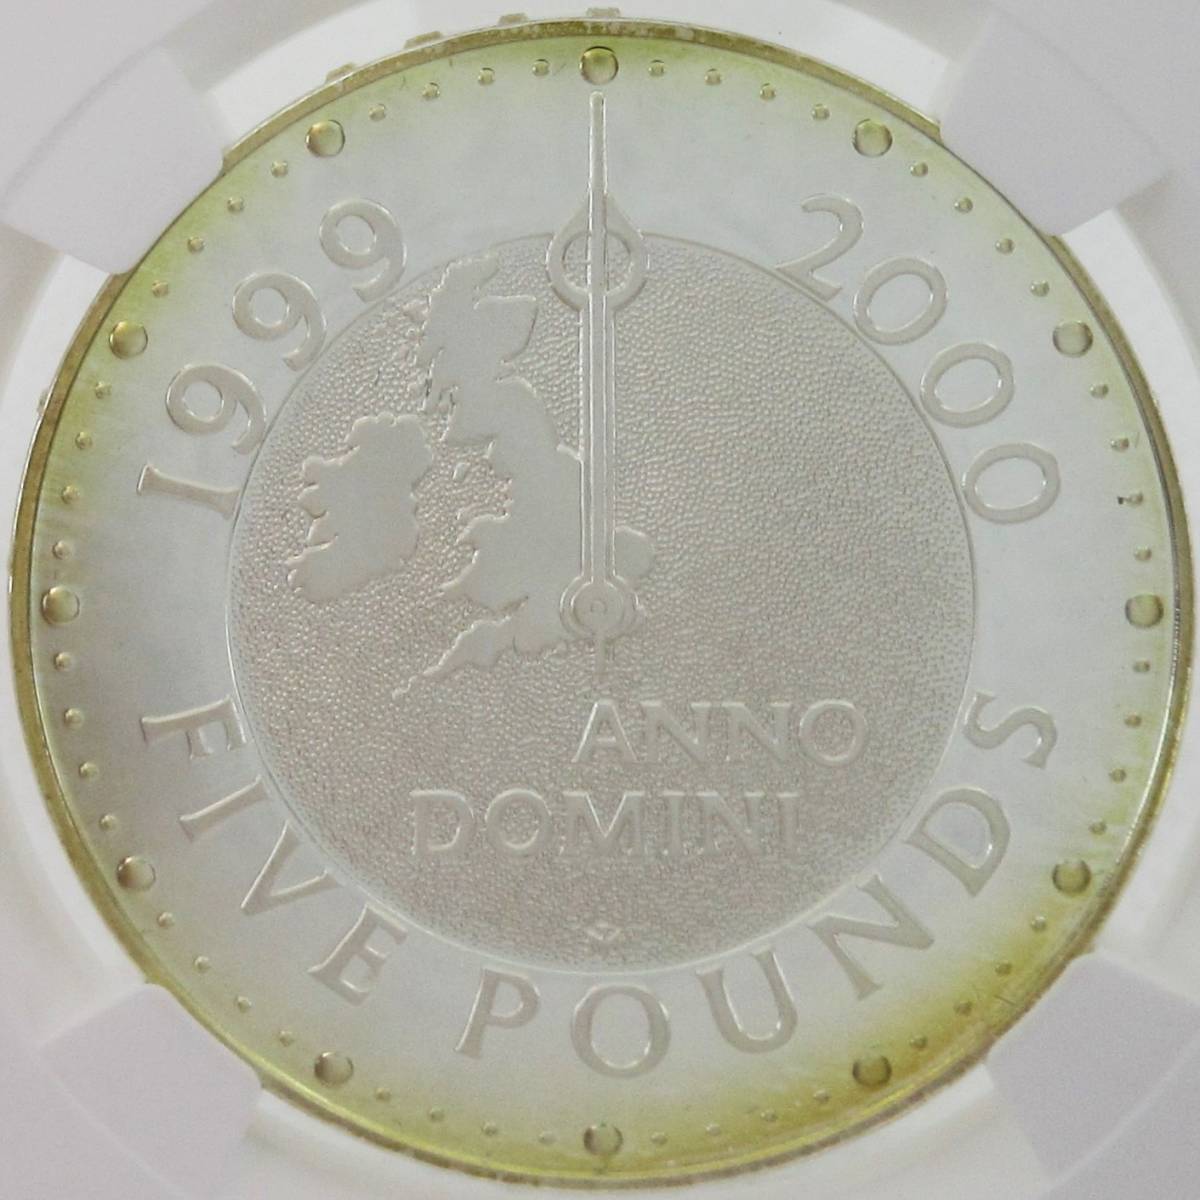 【柔らかなトーン】 1999 イギリス 5ポンド 銀貨 ミレニアム エリザベス2世 NGC PF69 ウルトラカメオ モダンコイン アンティーク_画像3